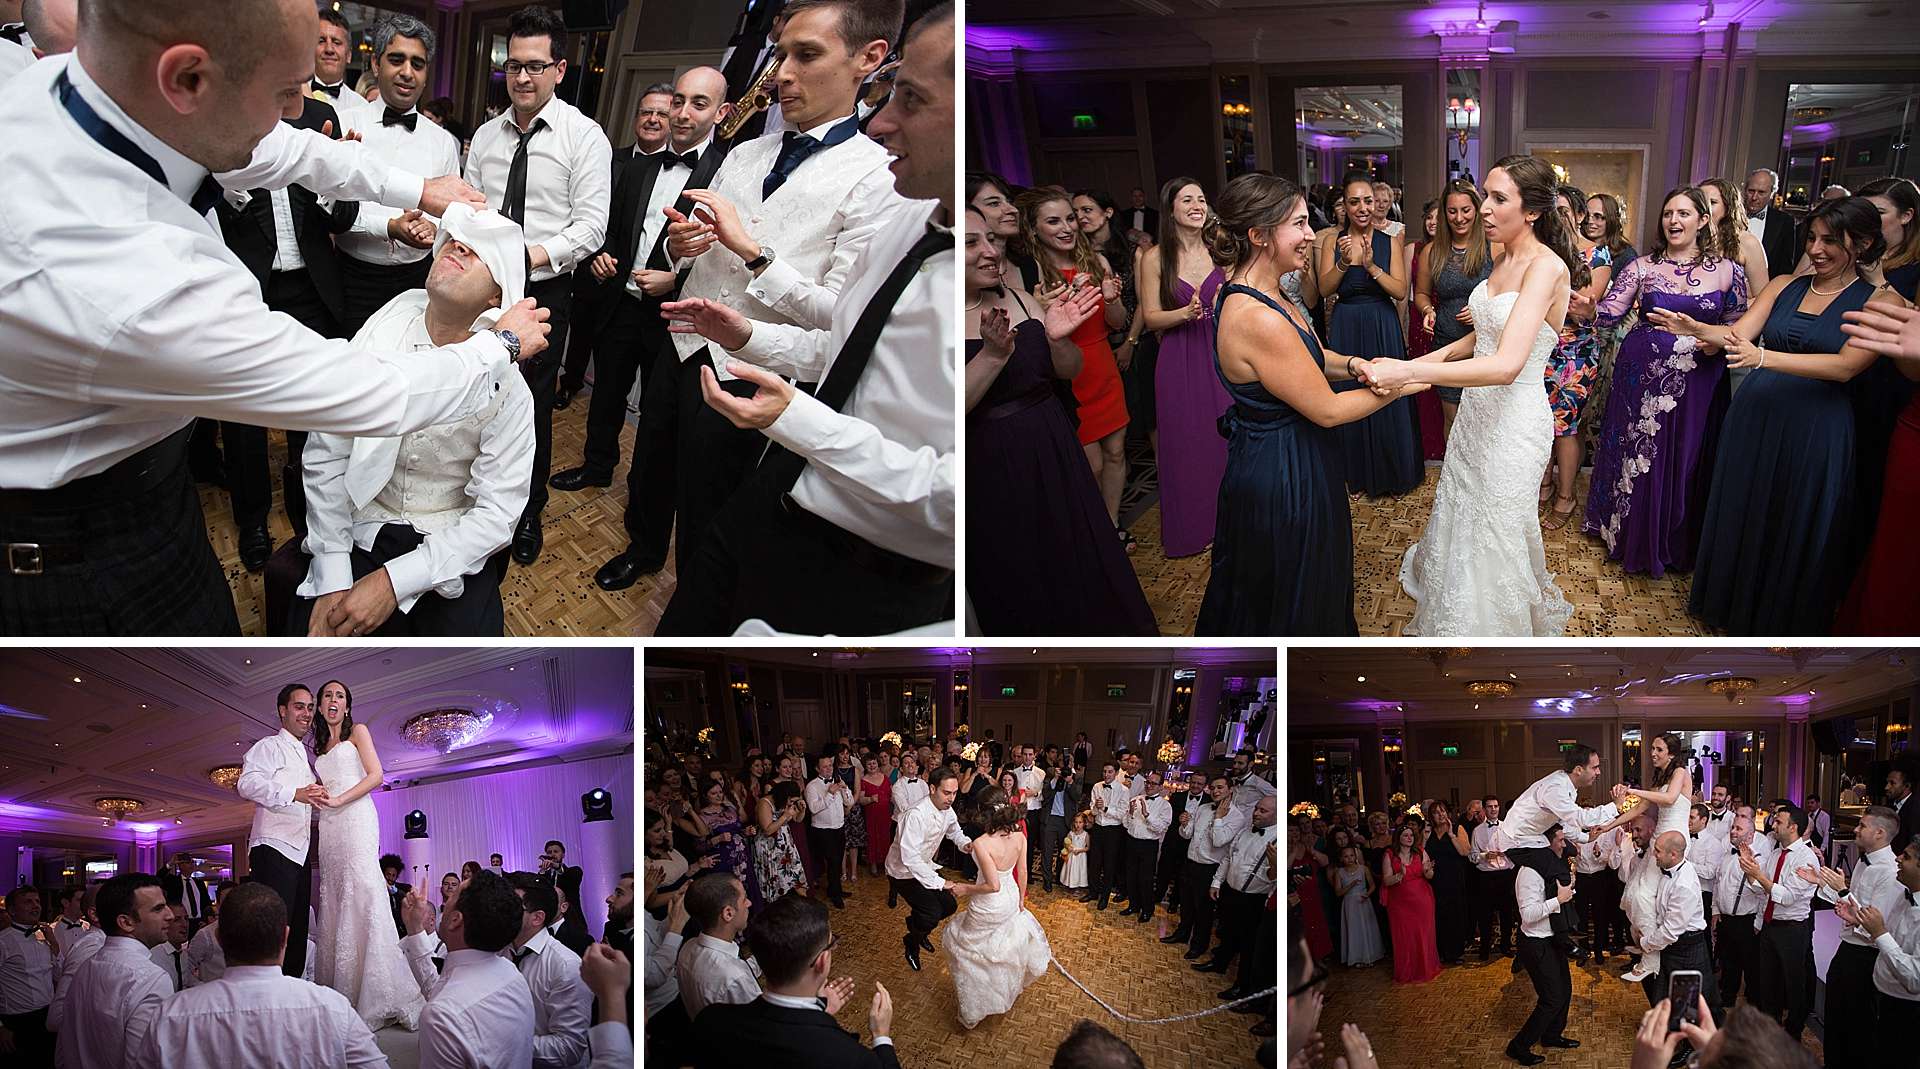 Israeli wedding dancing